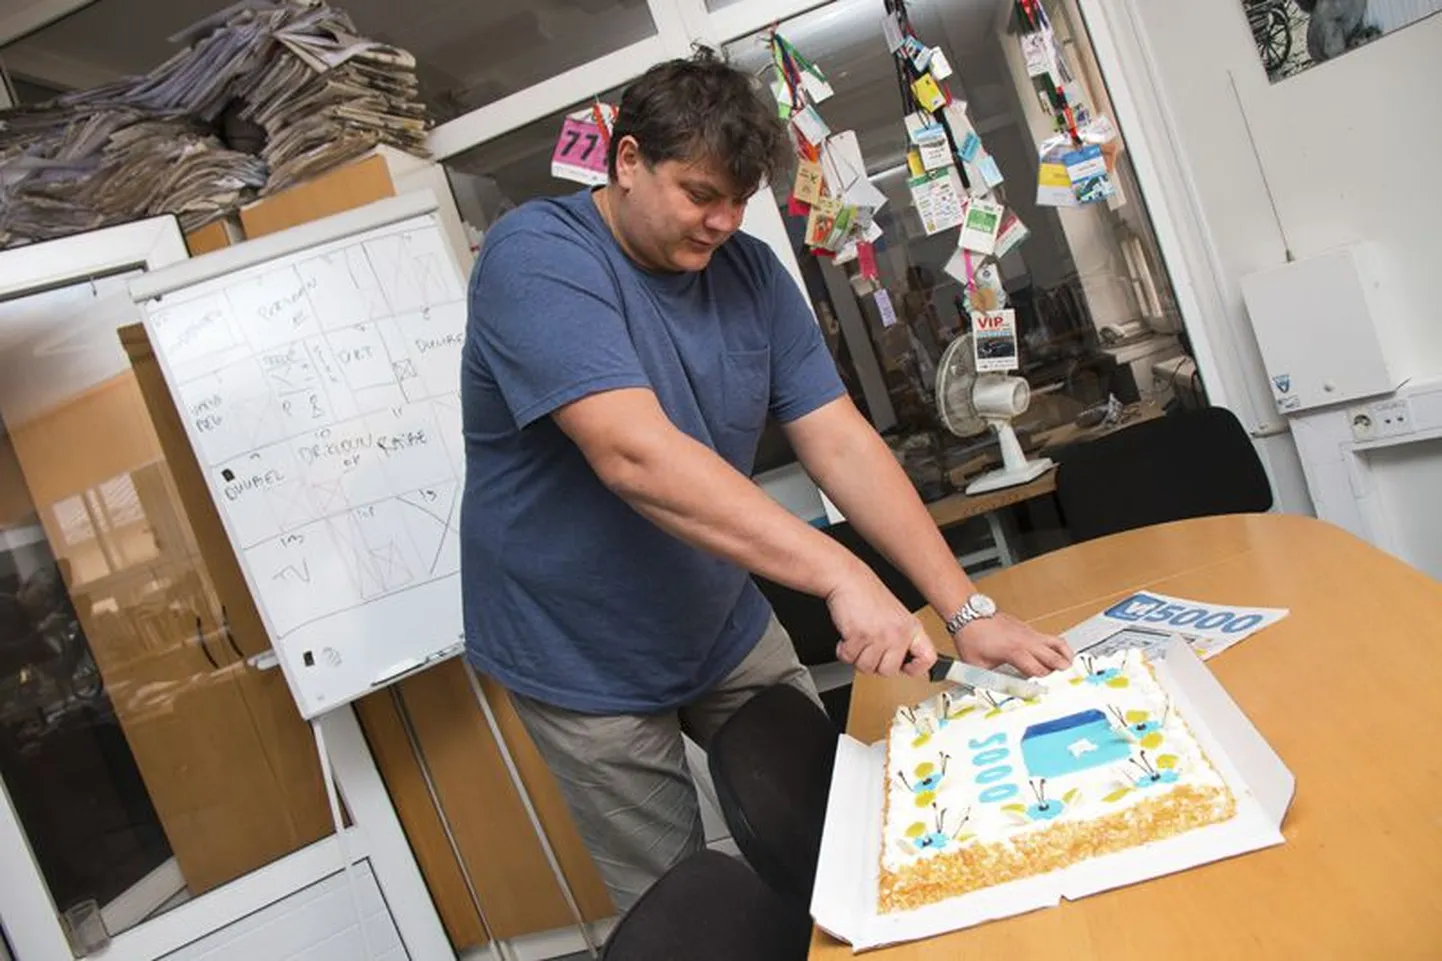 Virumaa Teataja toimetusepere tähistas eile suurt juubelit - ilmus Virumaa Teataja 5000. lehenumber ning selleks puhuks toodi majja ka suur tort.